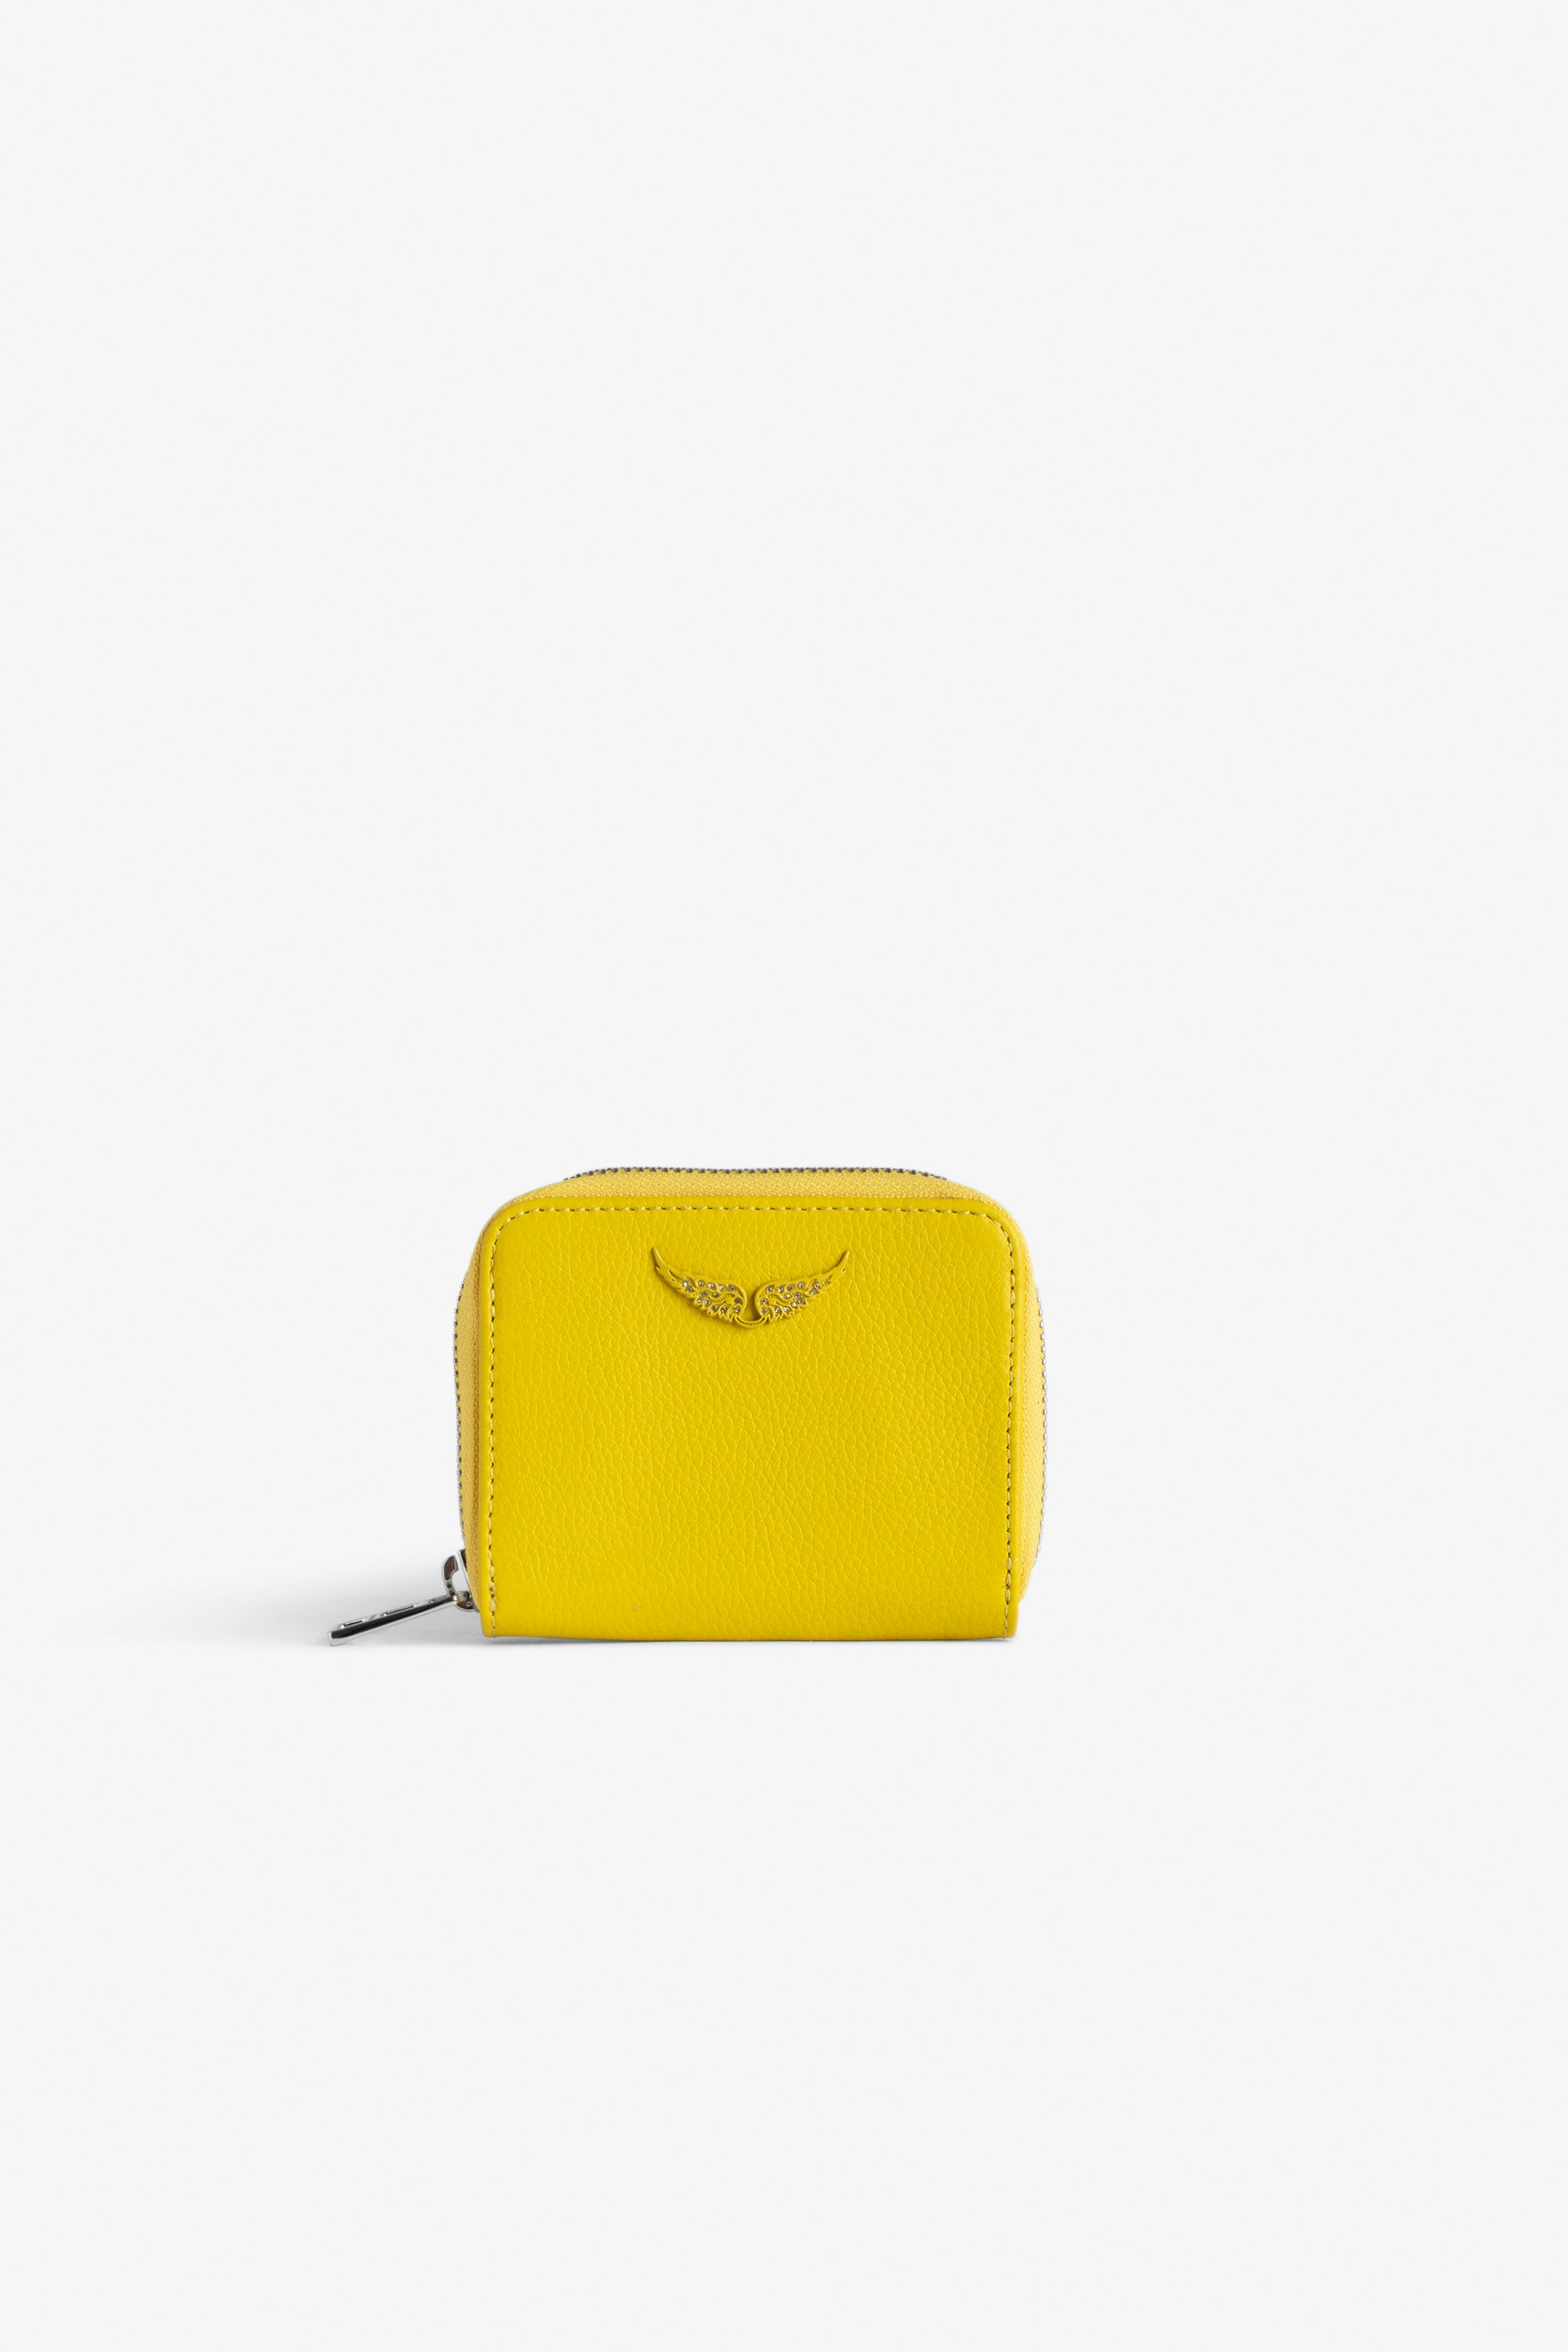 Portamonete Mini ZV Portafoglio in pelle granulata giallo con charm ali in strass da donna.